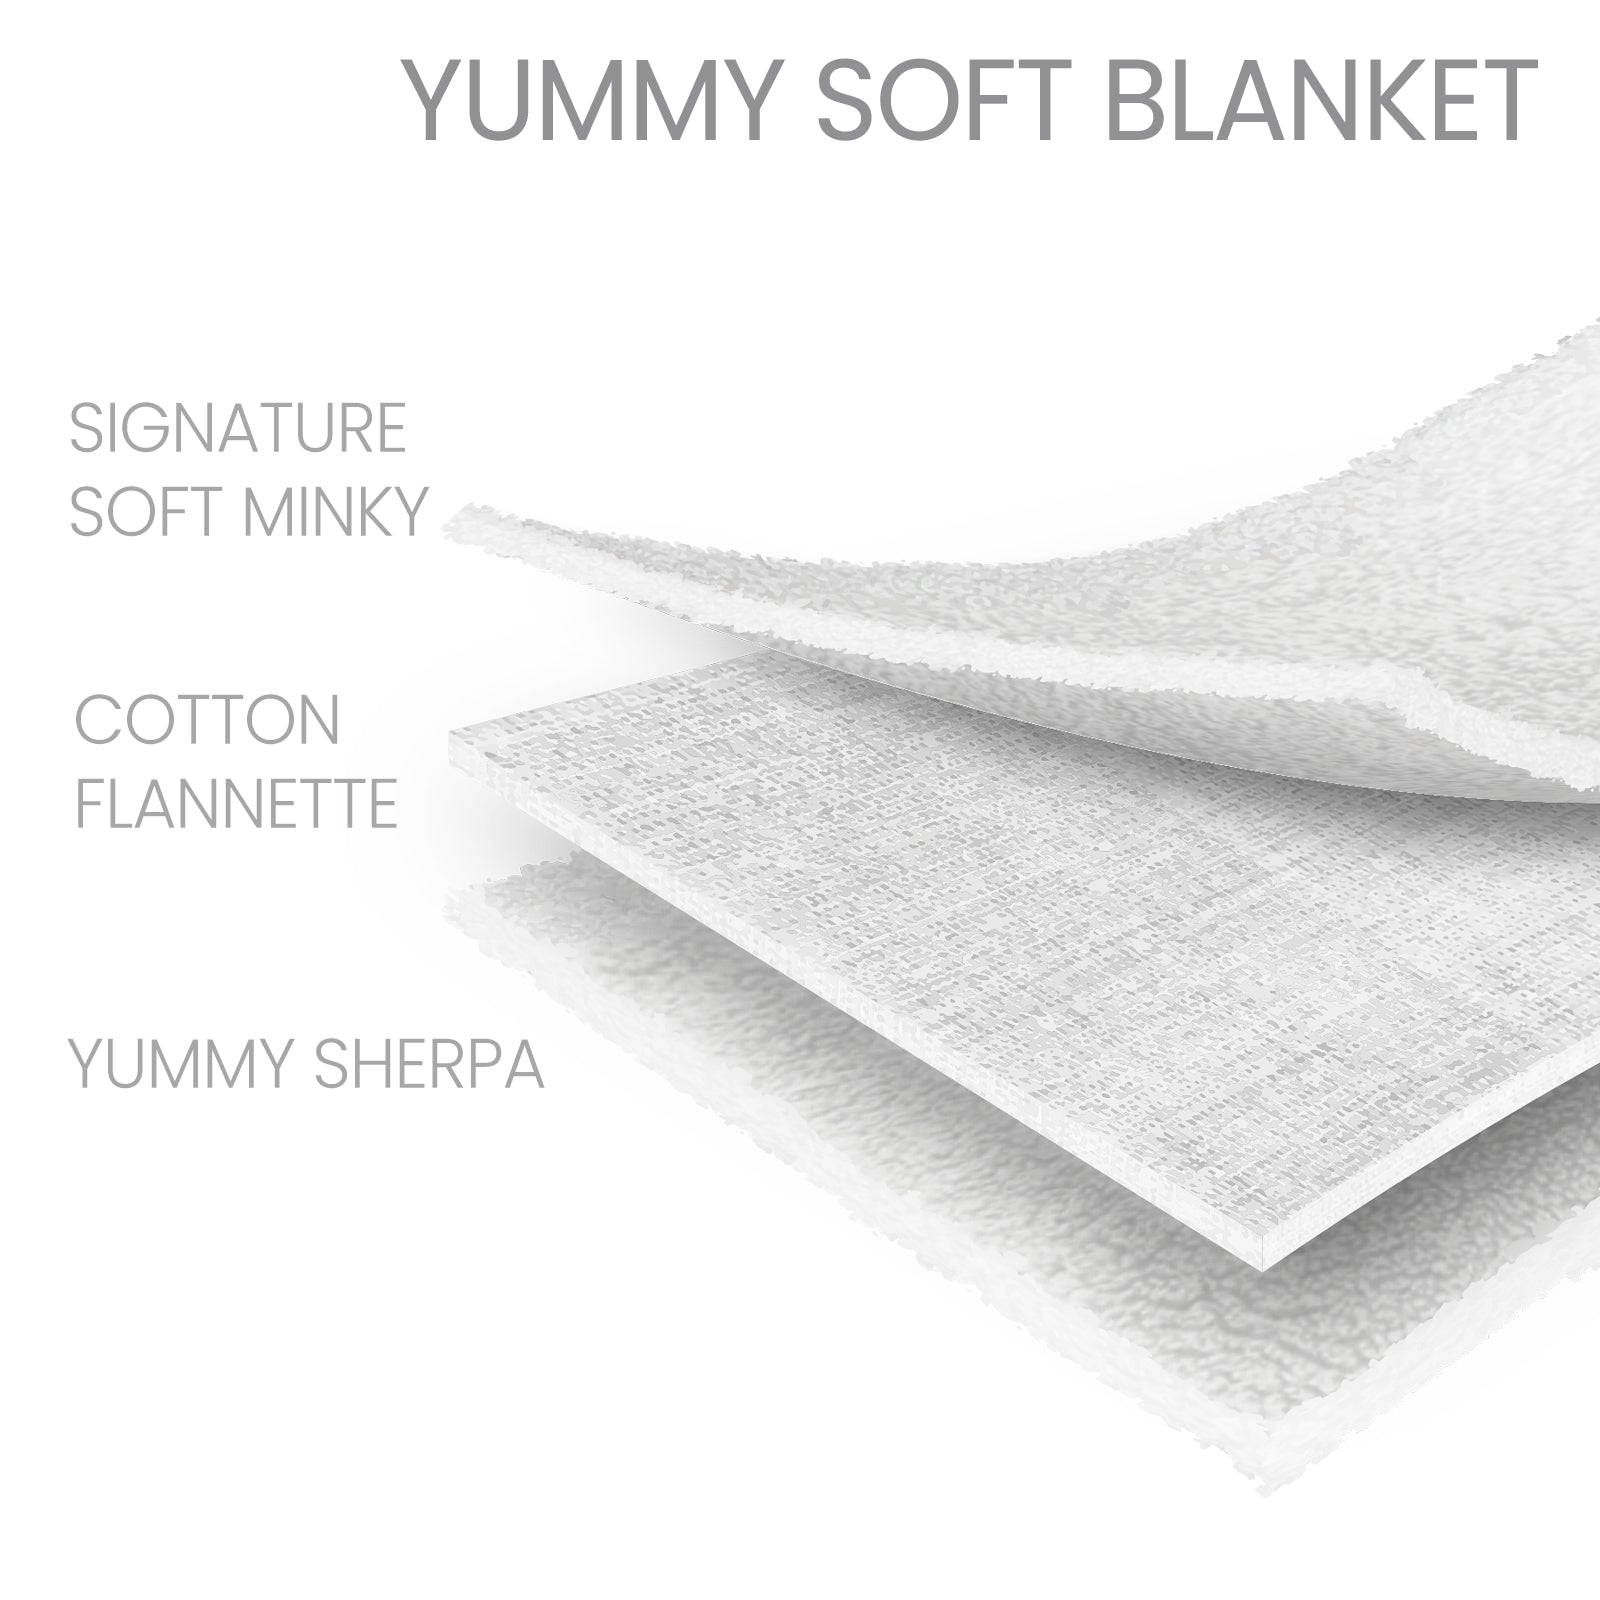 Yummy Soft Blanket